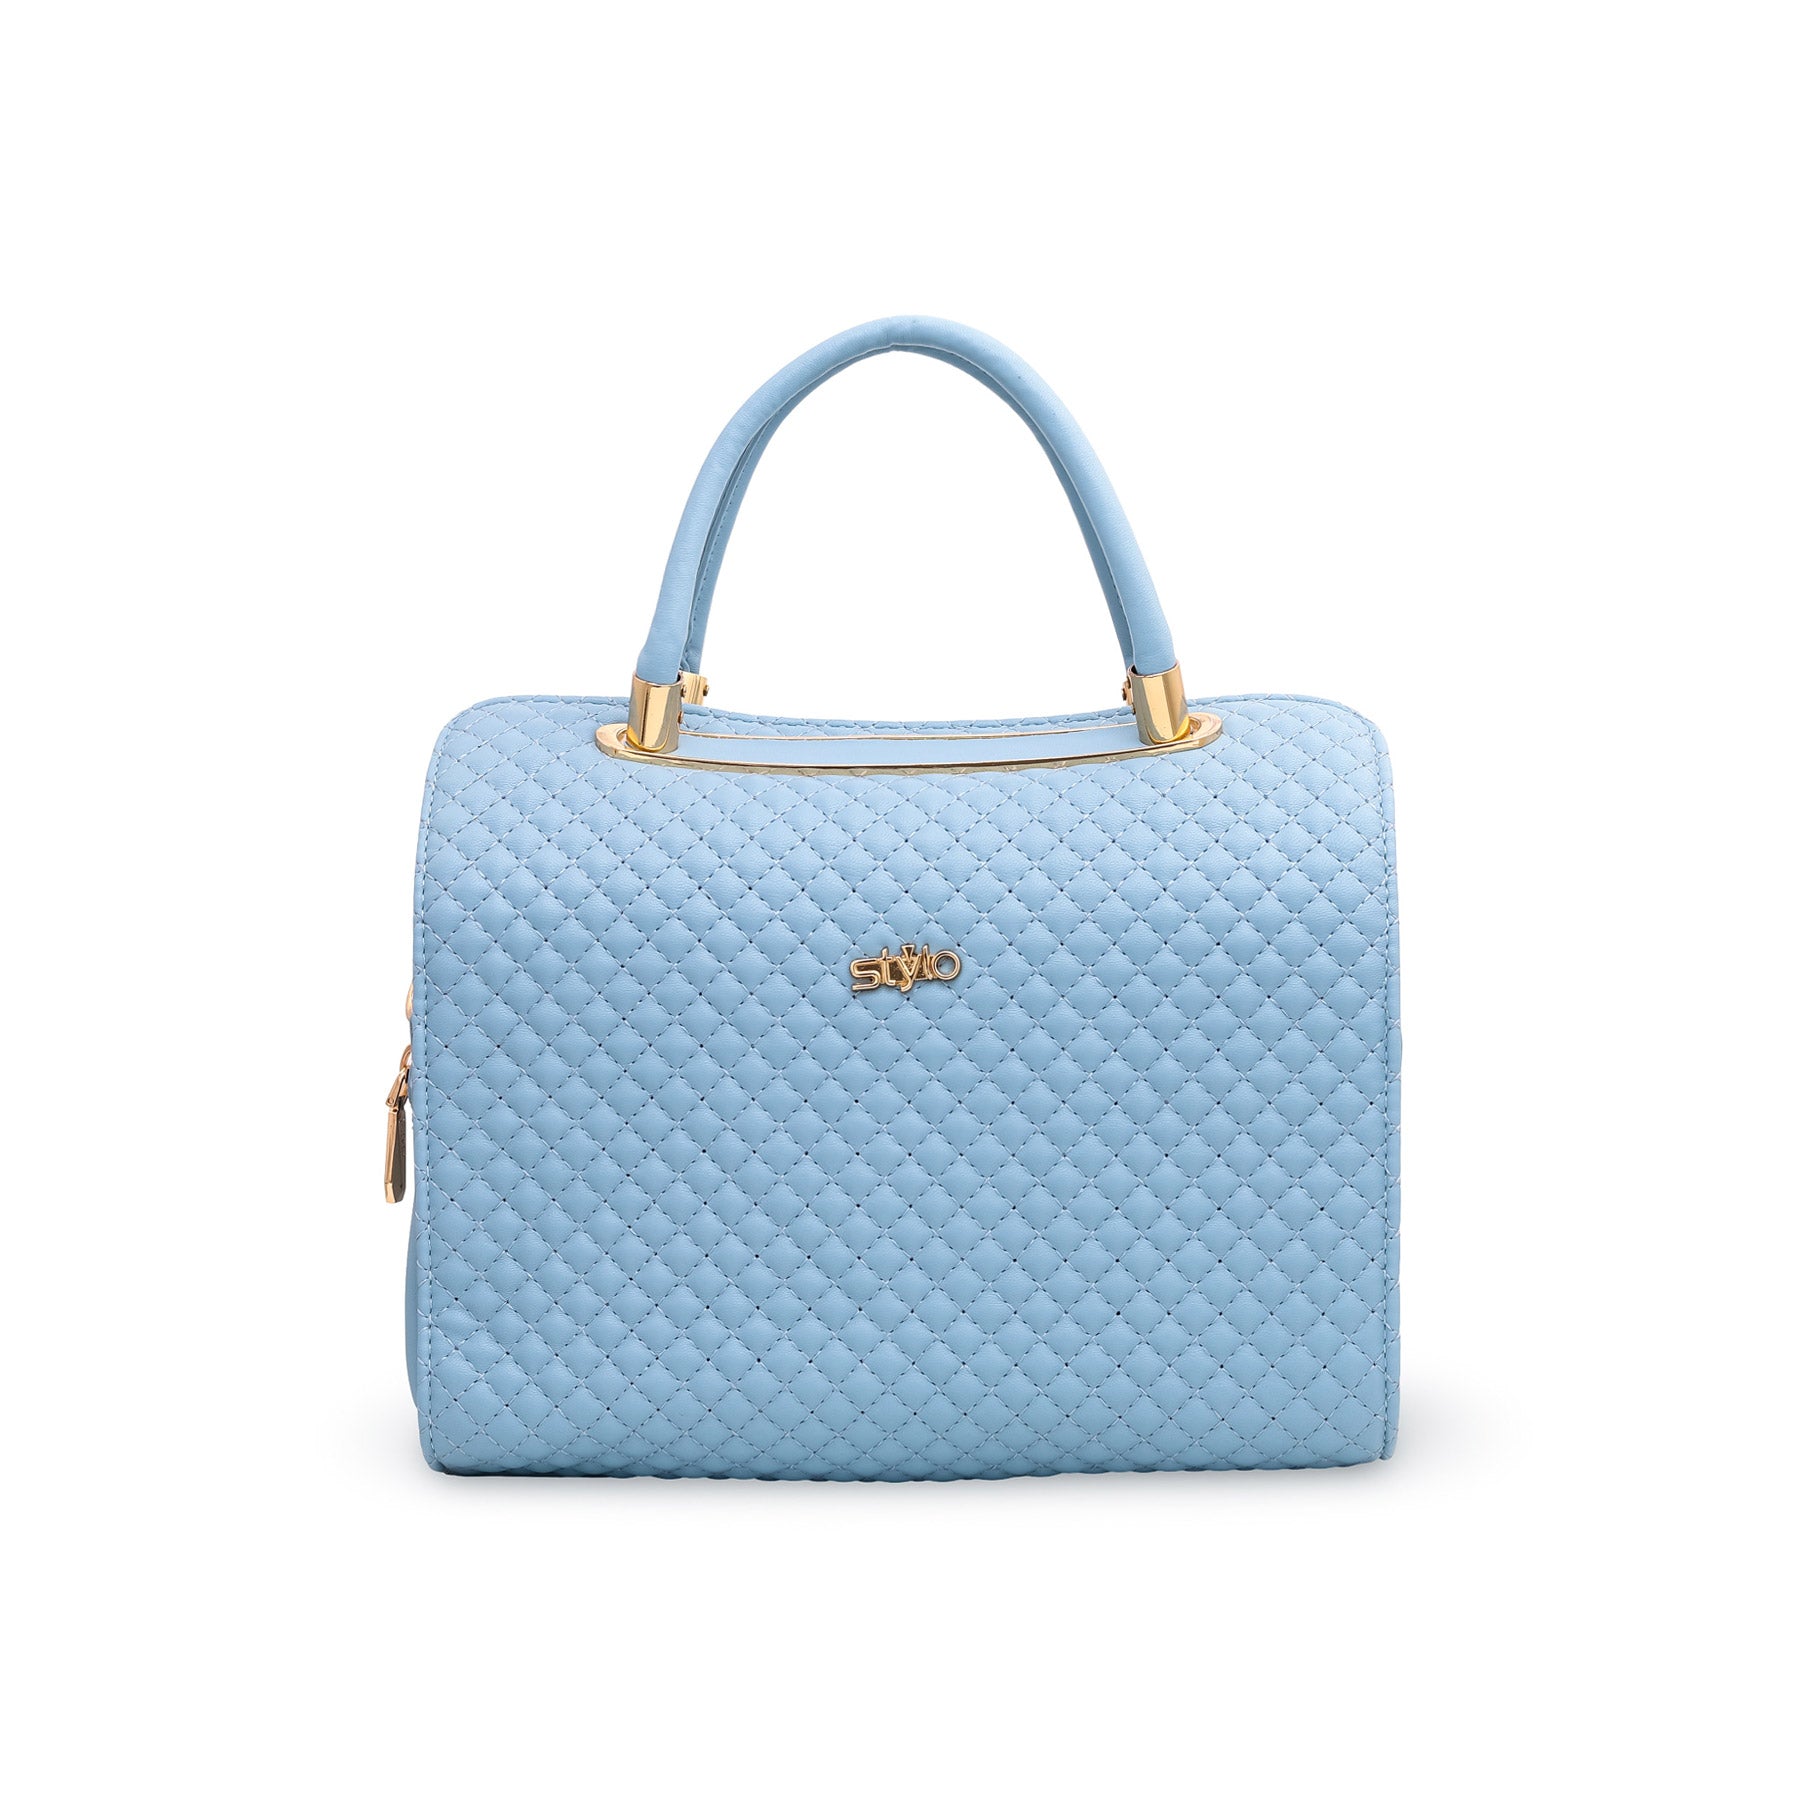 Blue Formal Hand Bag P36047